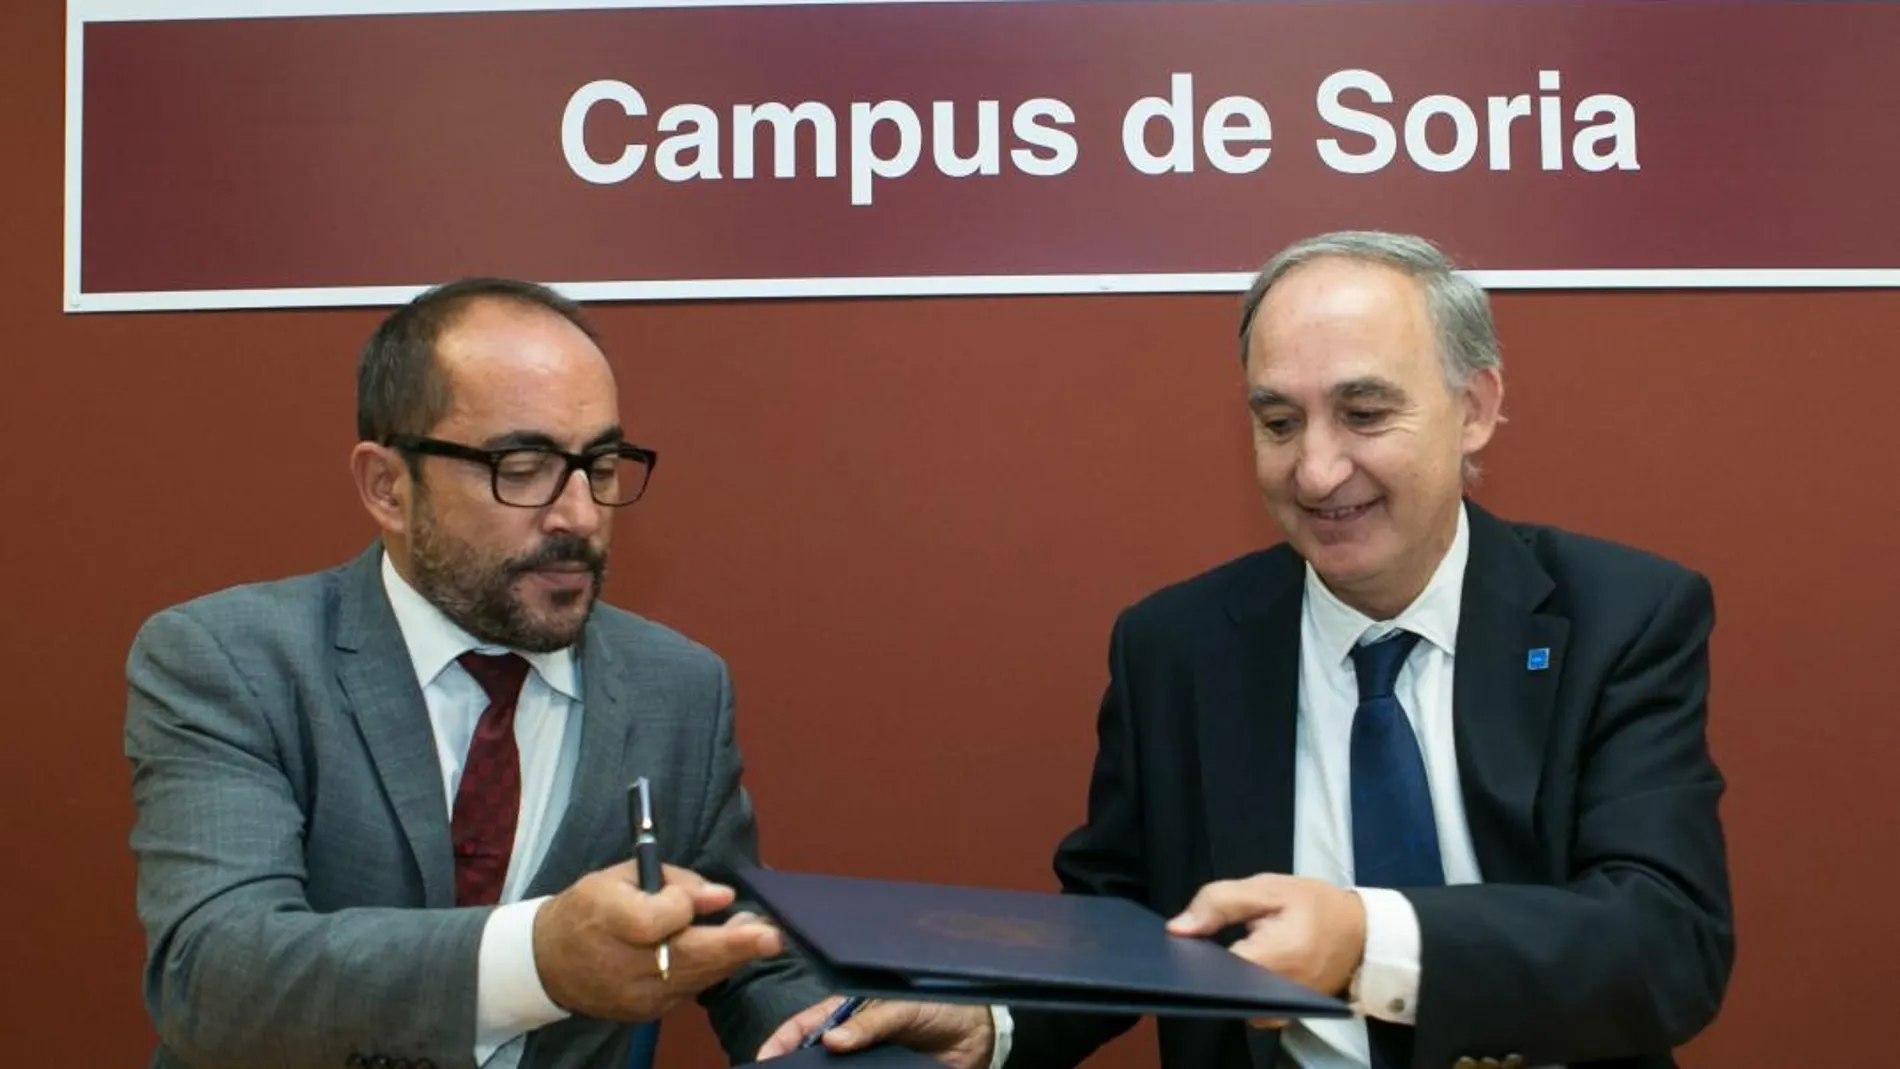 El rector Antonio Largo, y el presidente de la Diputación de Soria, Luis Rey, firman el acuerdo